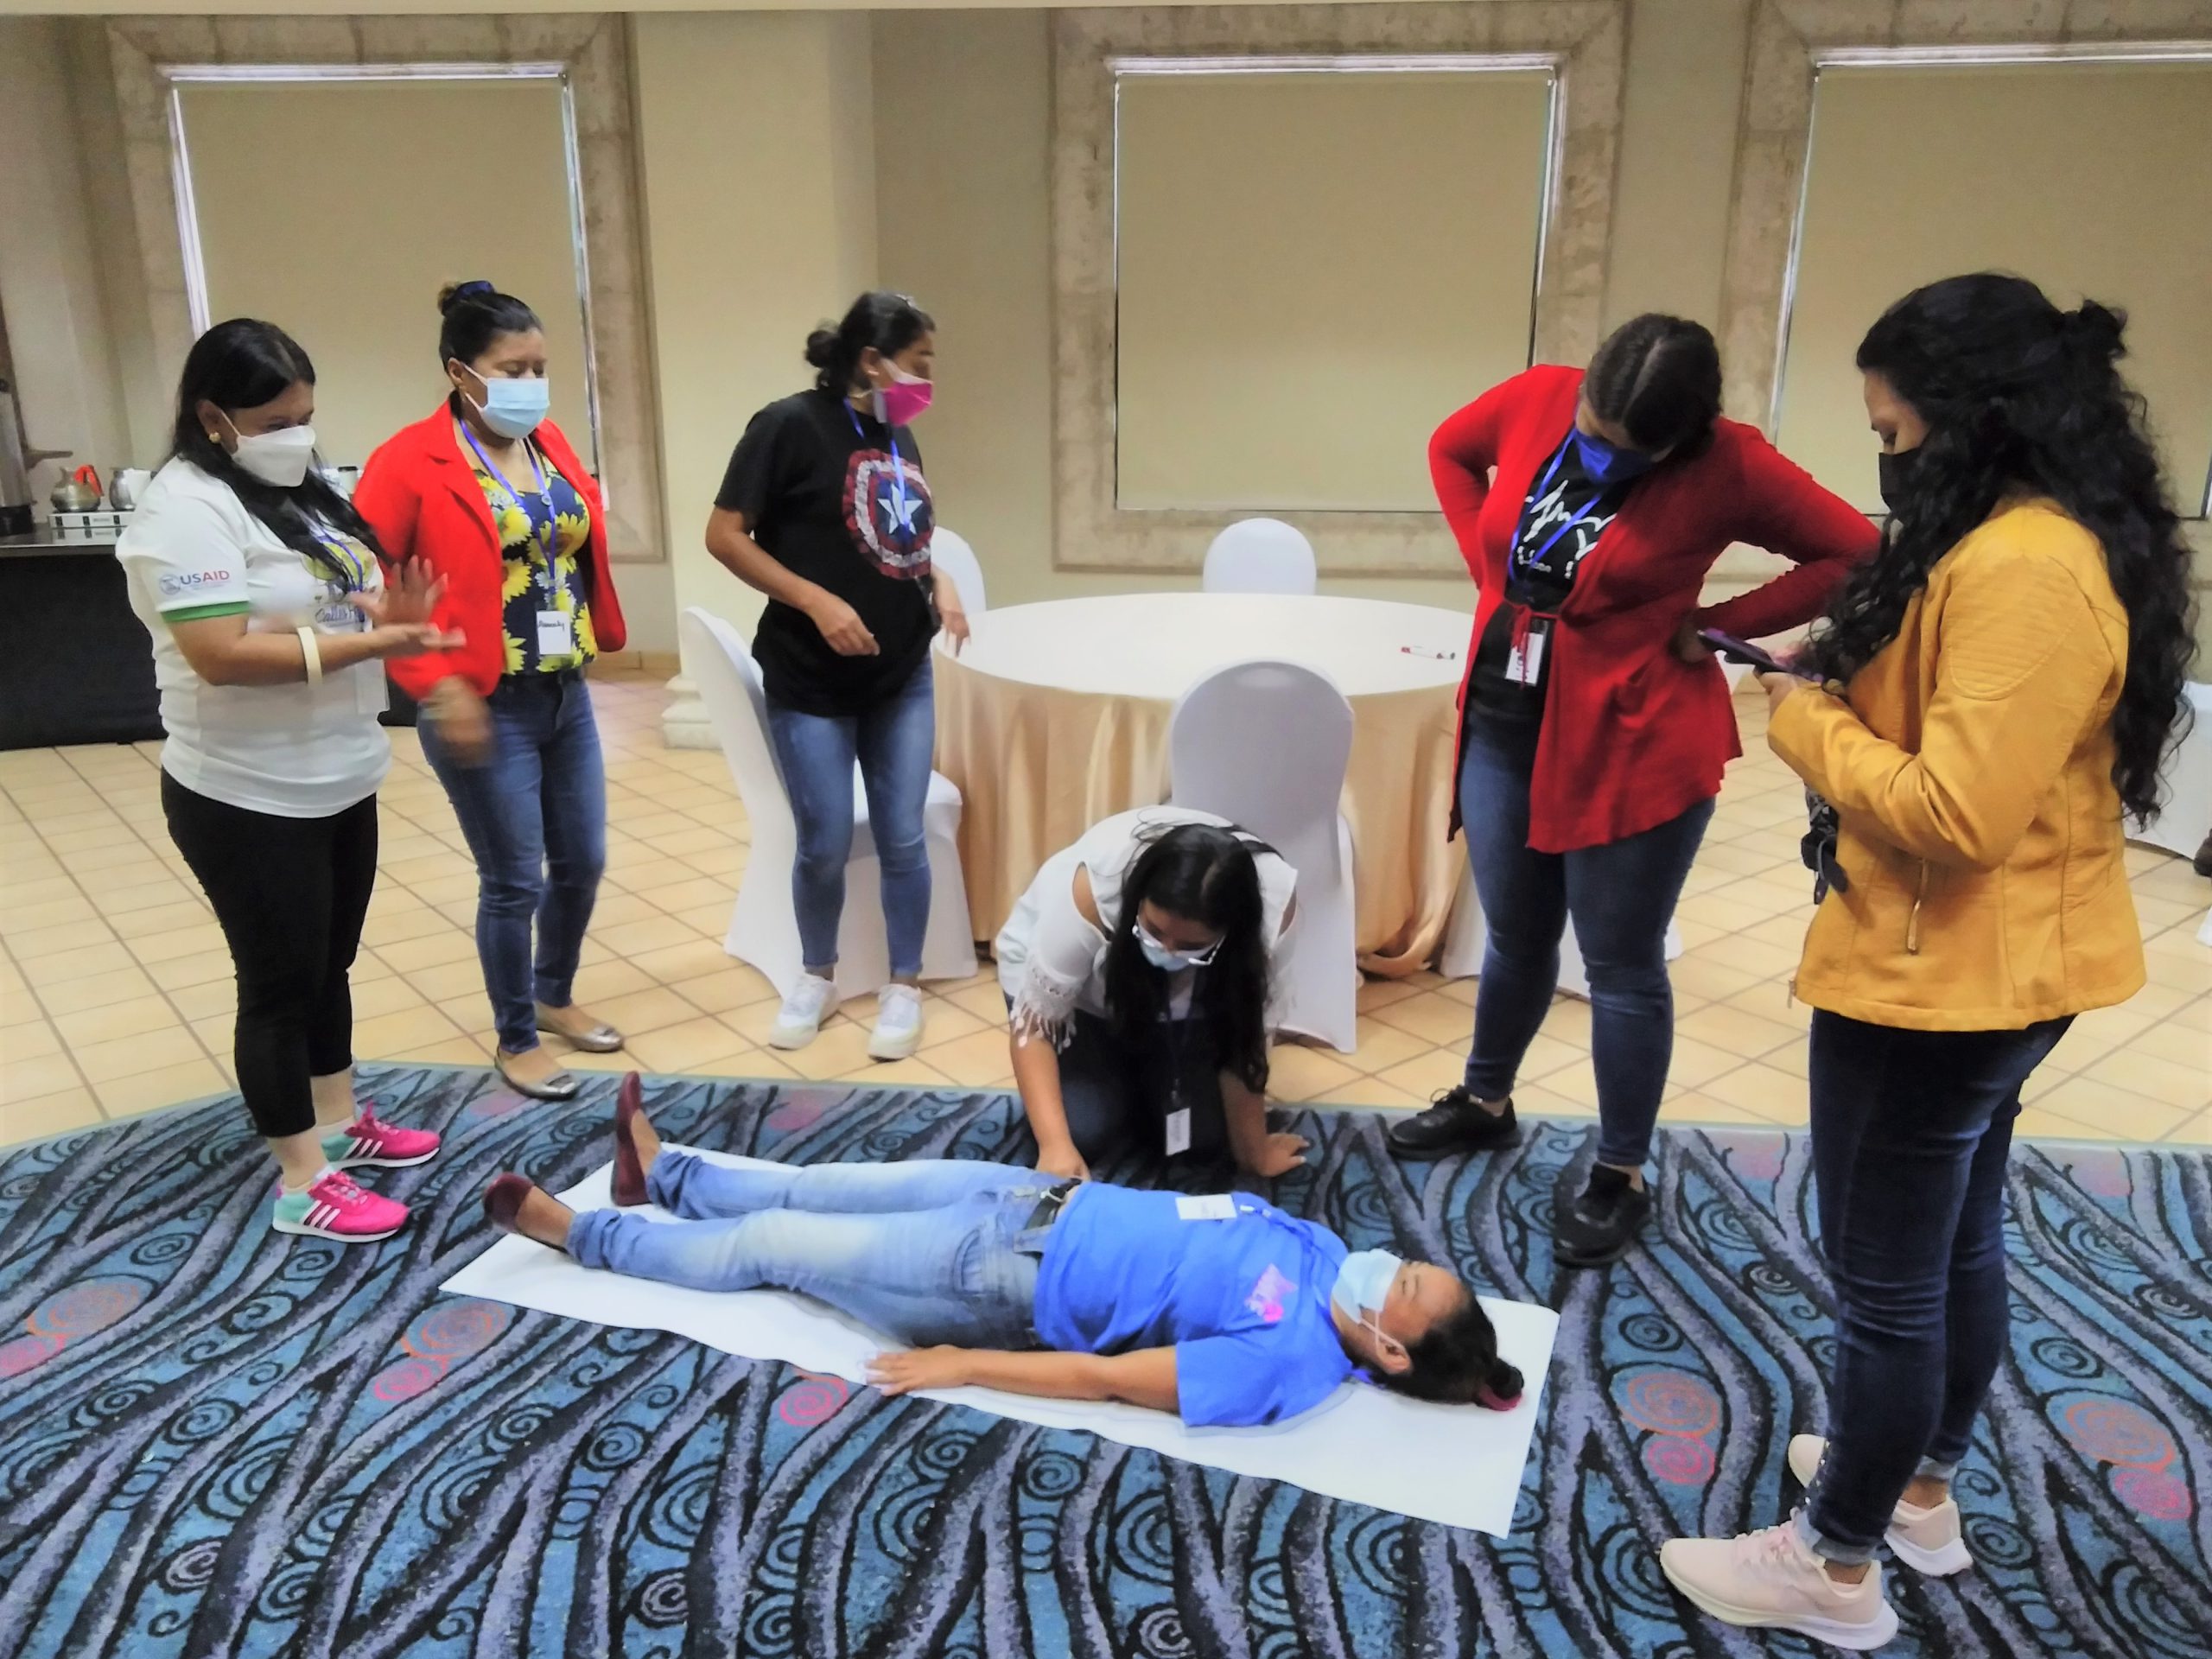 Un grupo de mujeres del CDAJ realizó un ejercicio práctico denominado "Explorando mi género", donde pudieron identificar y diferenciar las características biológicas (sexo) y las normas sociales (roles de género).